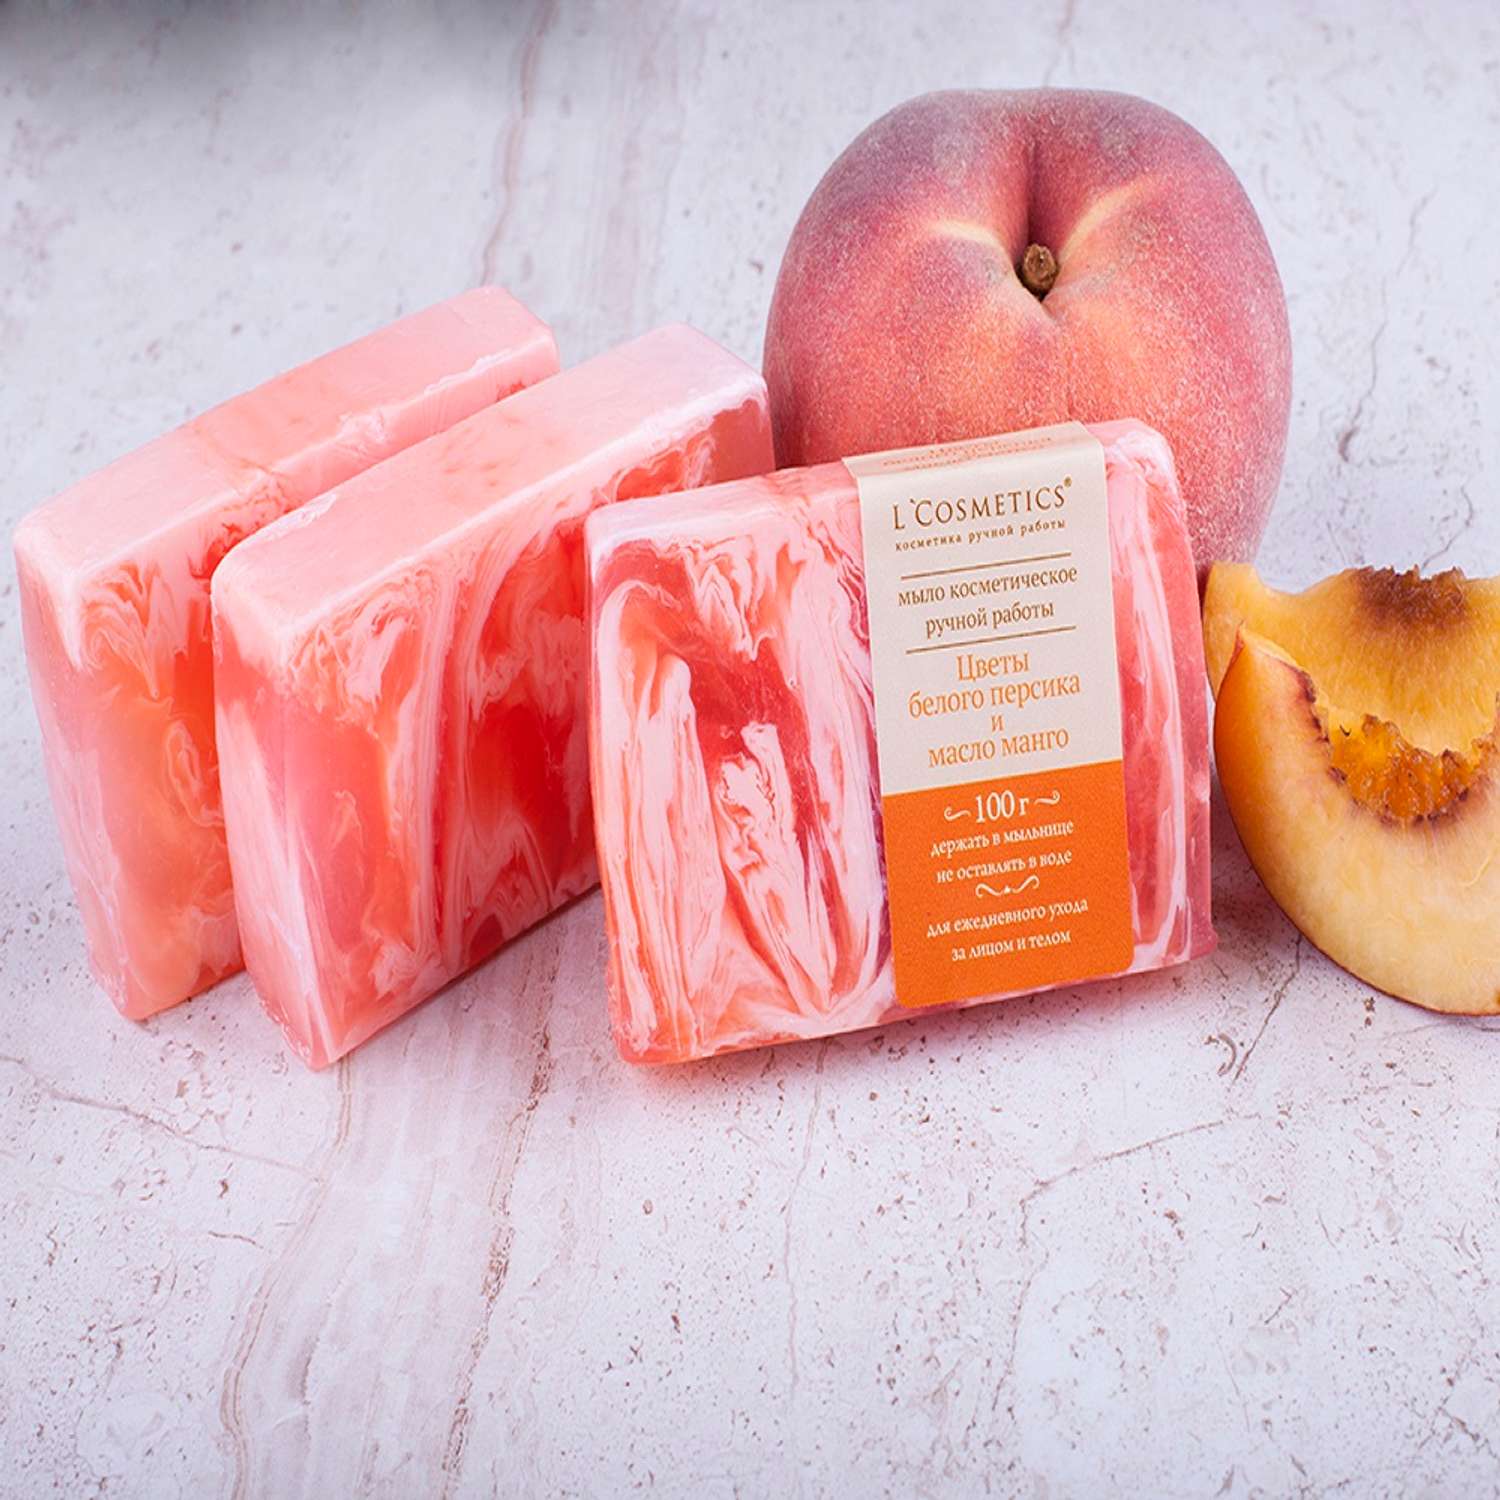 Мыло ручной работы 100гр LCosmetics Цветы белого персика и масло манго - фото 1